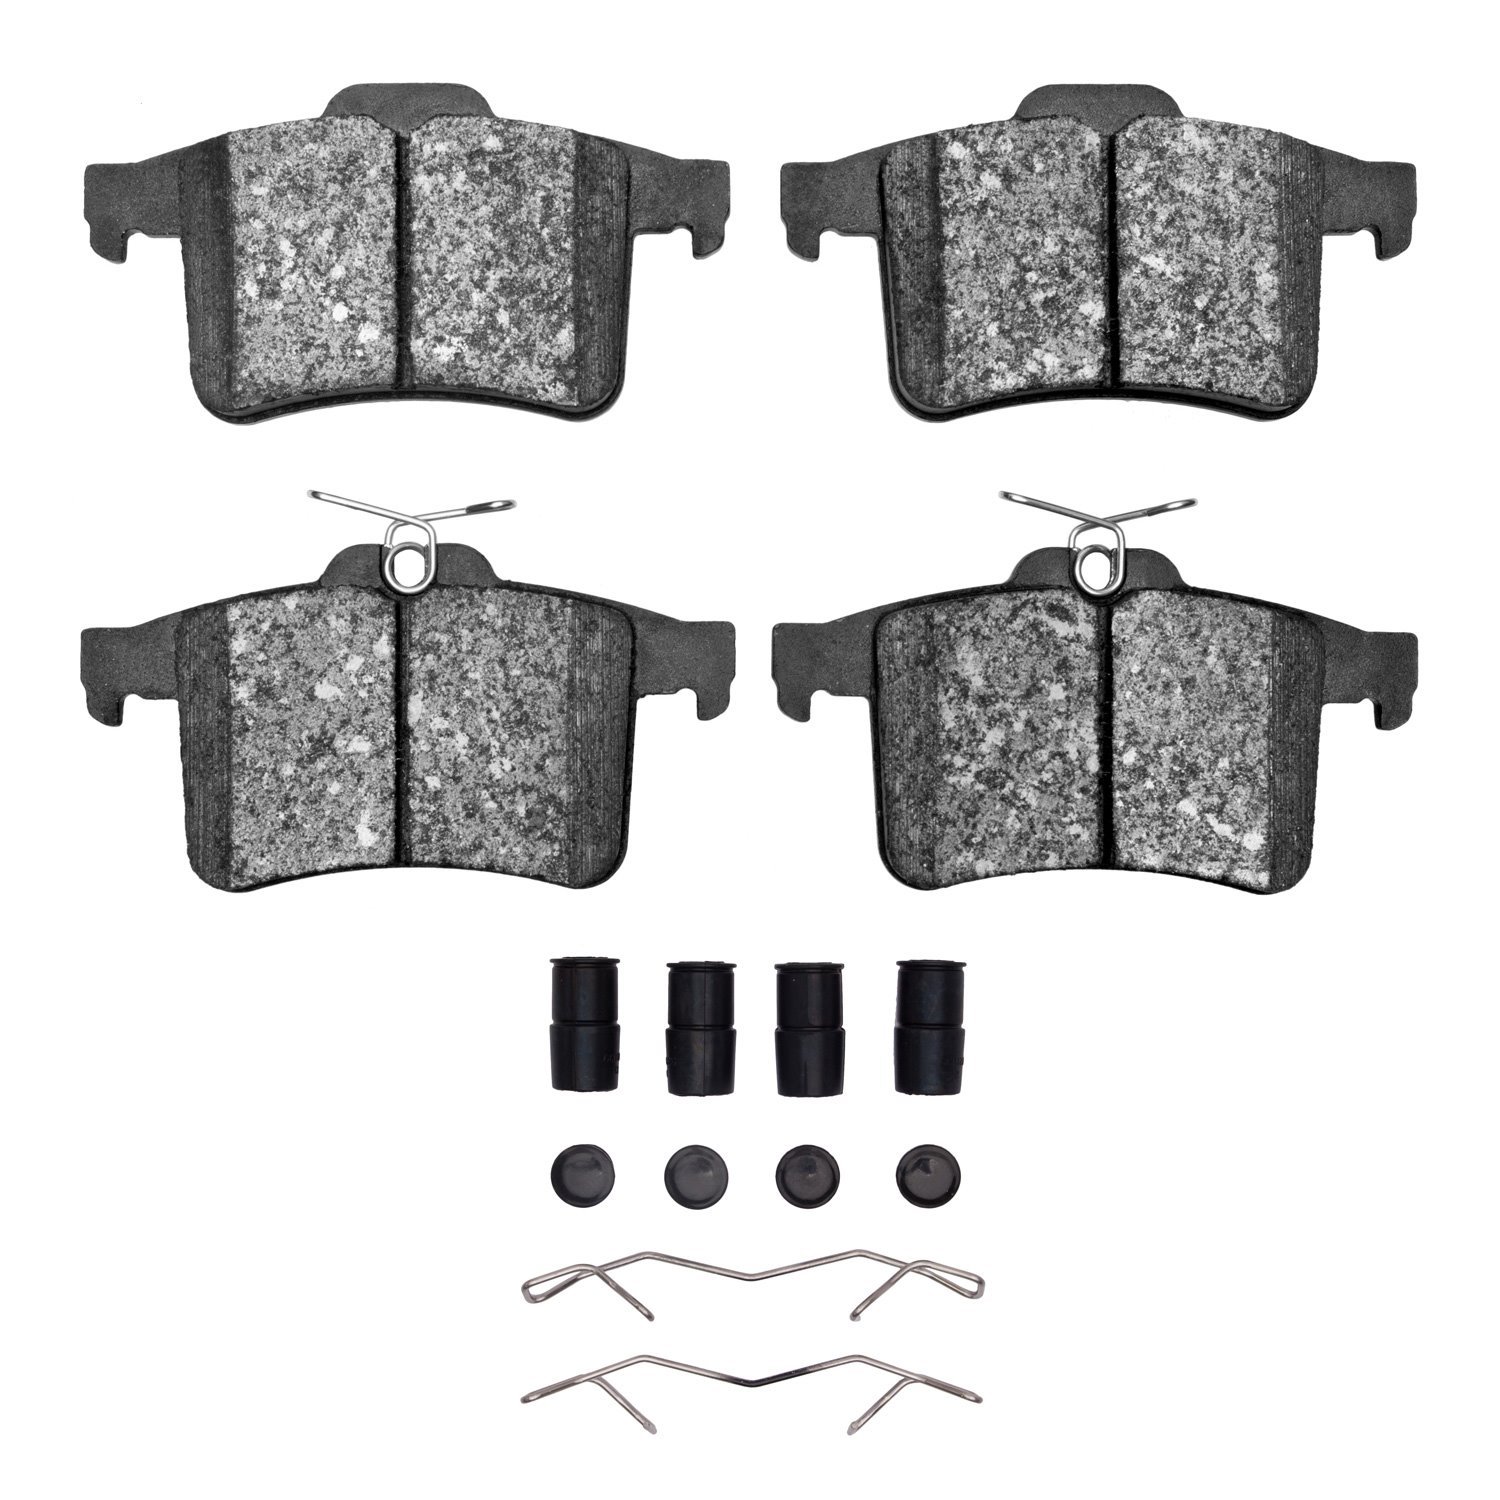 1551-1449-02 5000 Advanced Low-Metallic Brake Pads & Hardware Kit, 2010-2015 Jaguar, Position: Rear